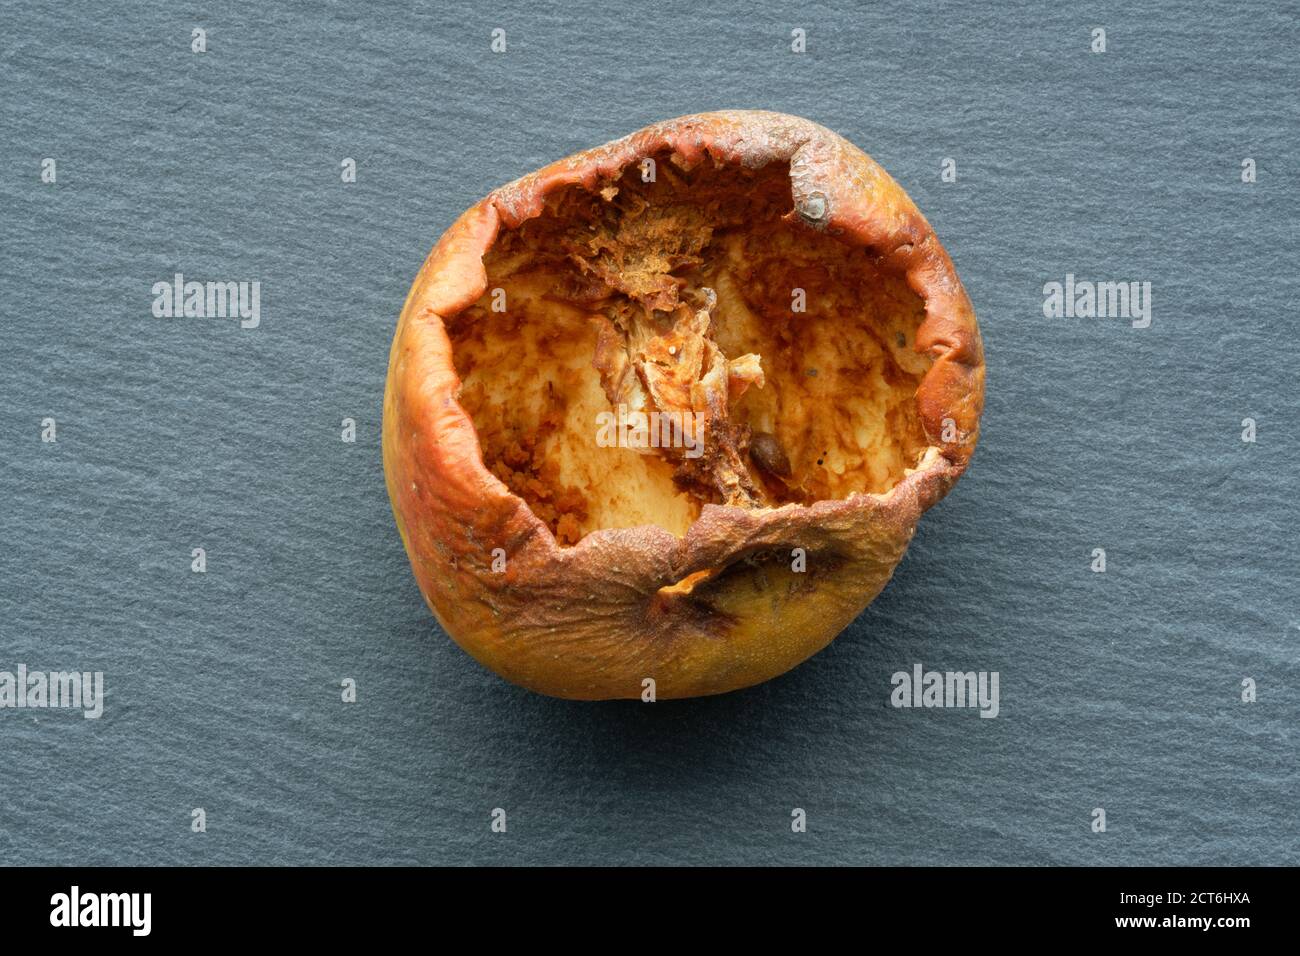 Una mela mangiata via al nucleo dagli insetti. Un'immagine in studio di una mela raccolta che è stata devastata dalla vita di insetti. Il foro di ingresso può essere visto in alto. Foto Stock